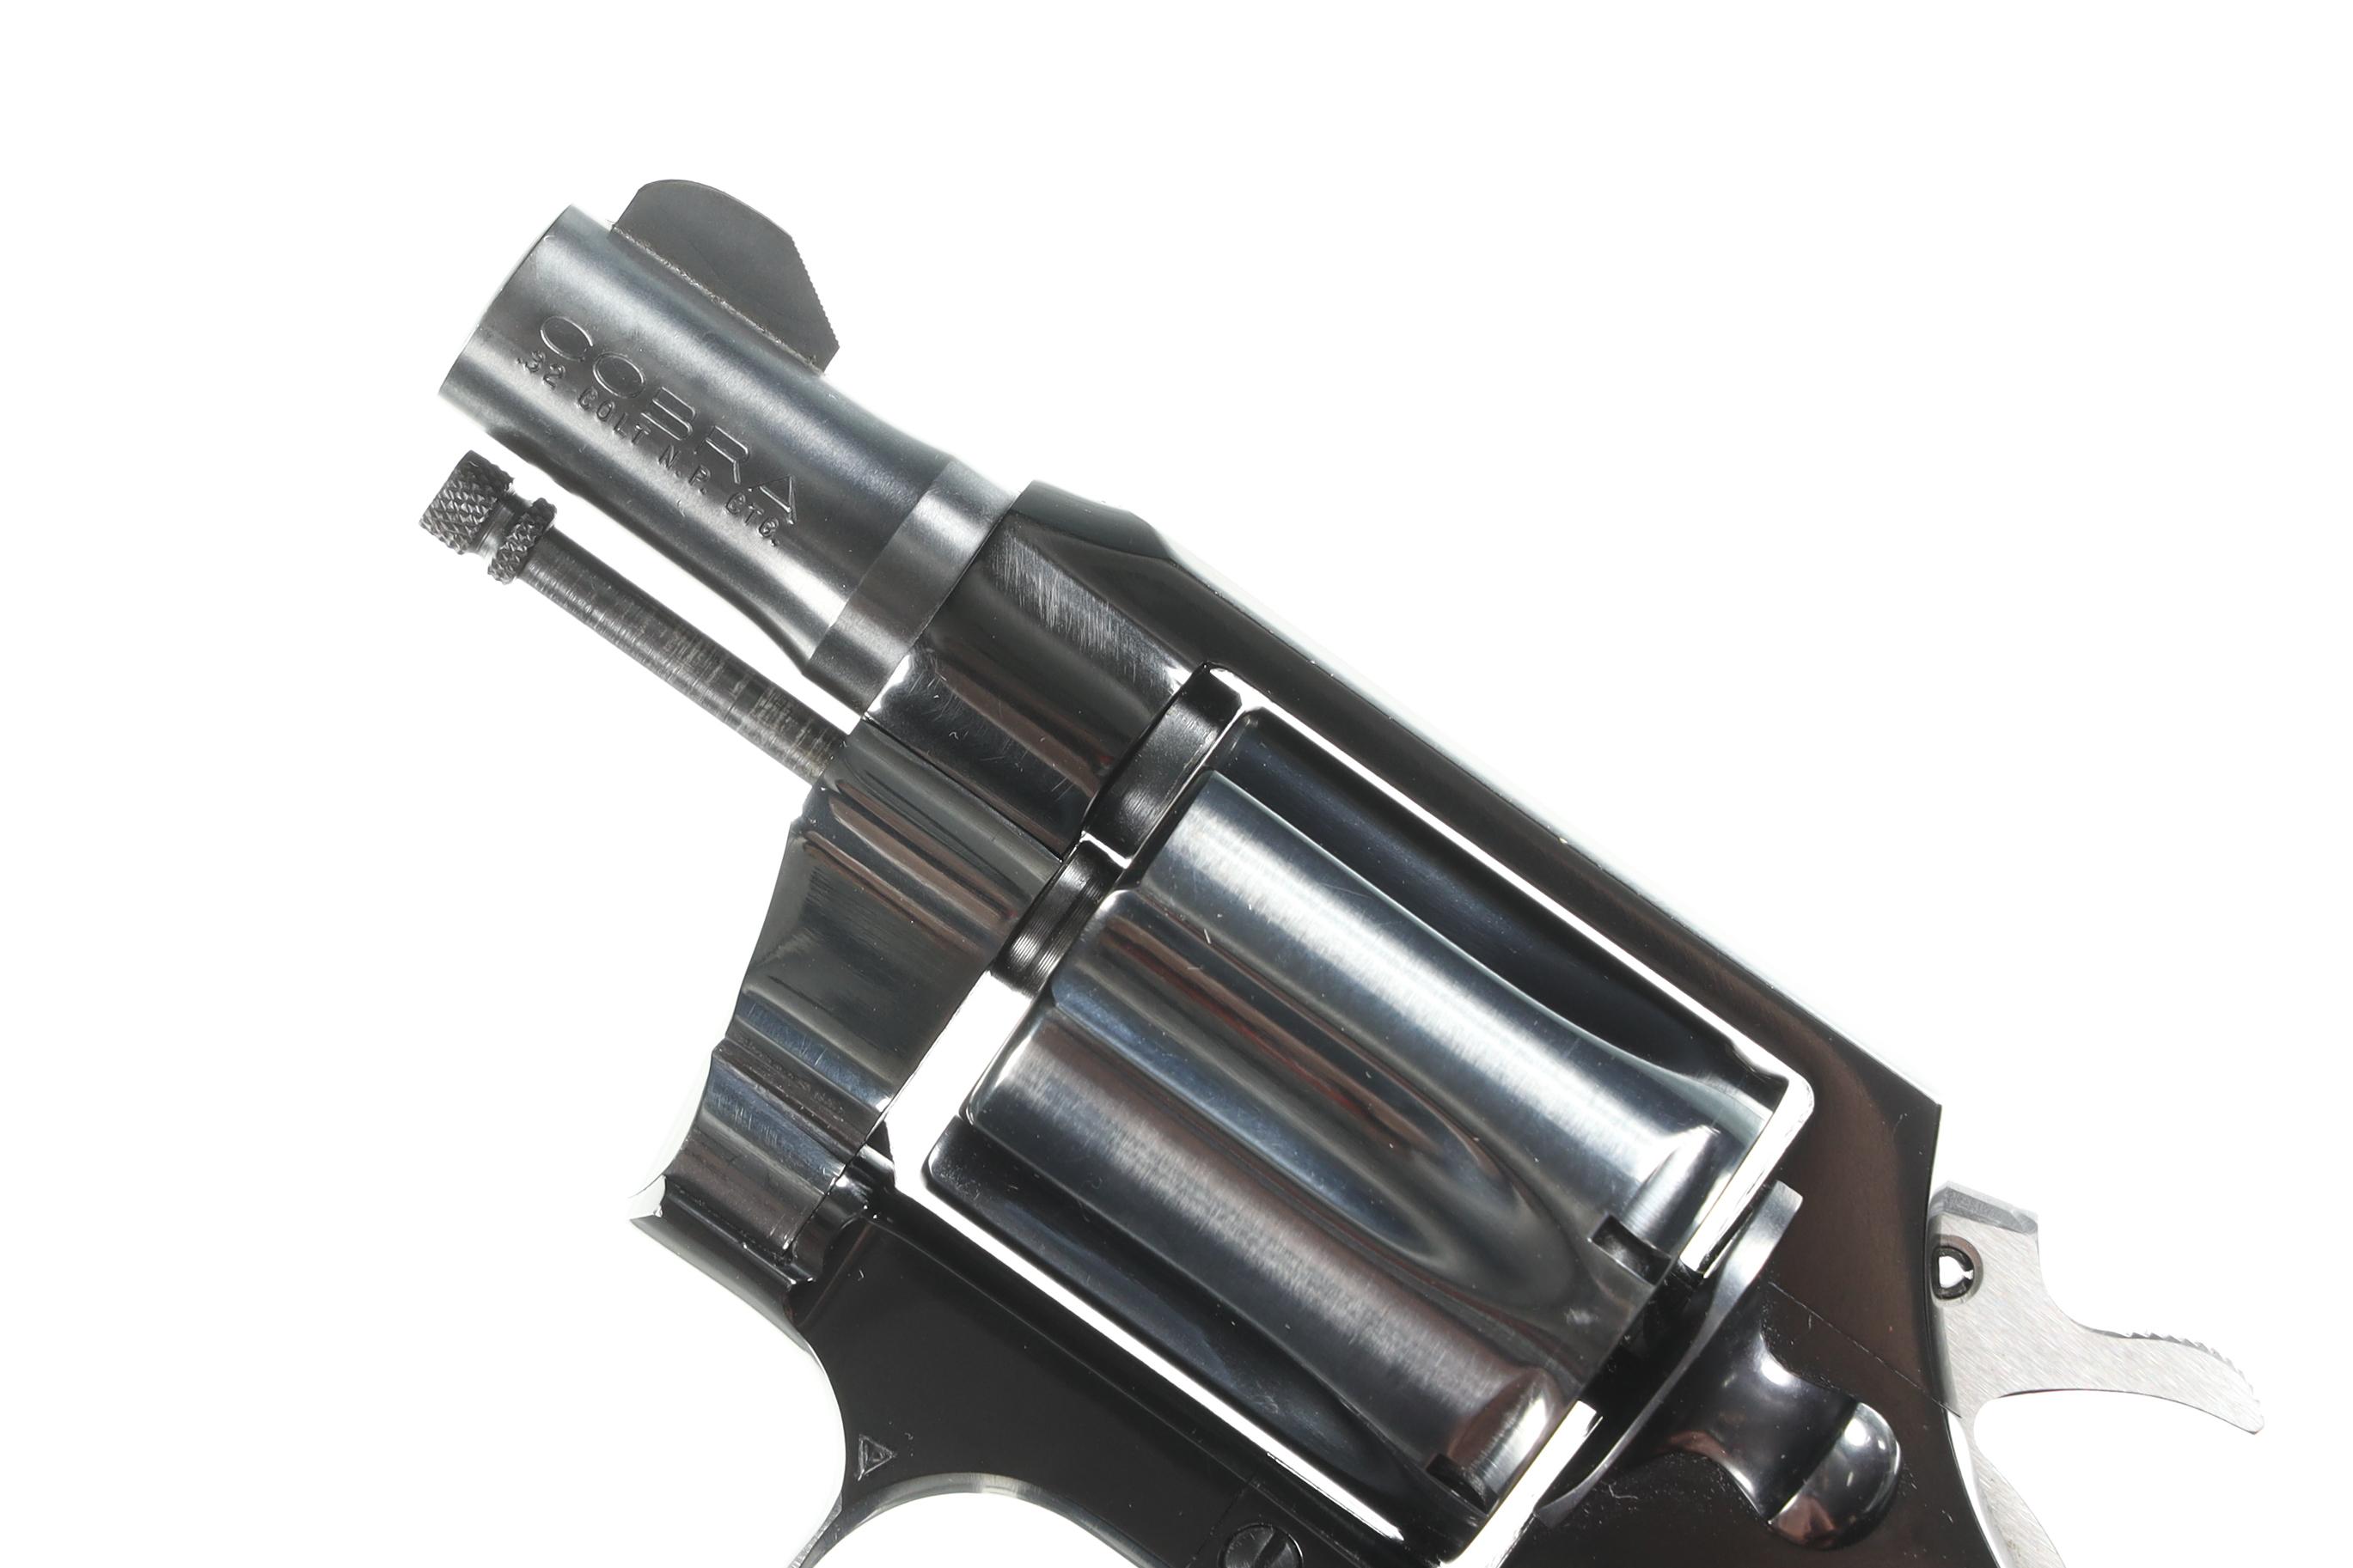 Colt Cobra Revolver .32 Colt NP